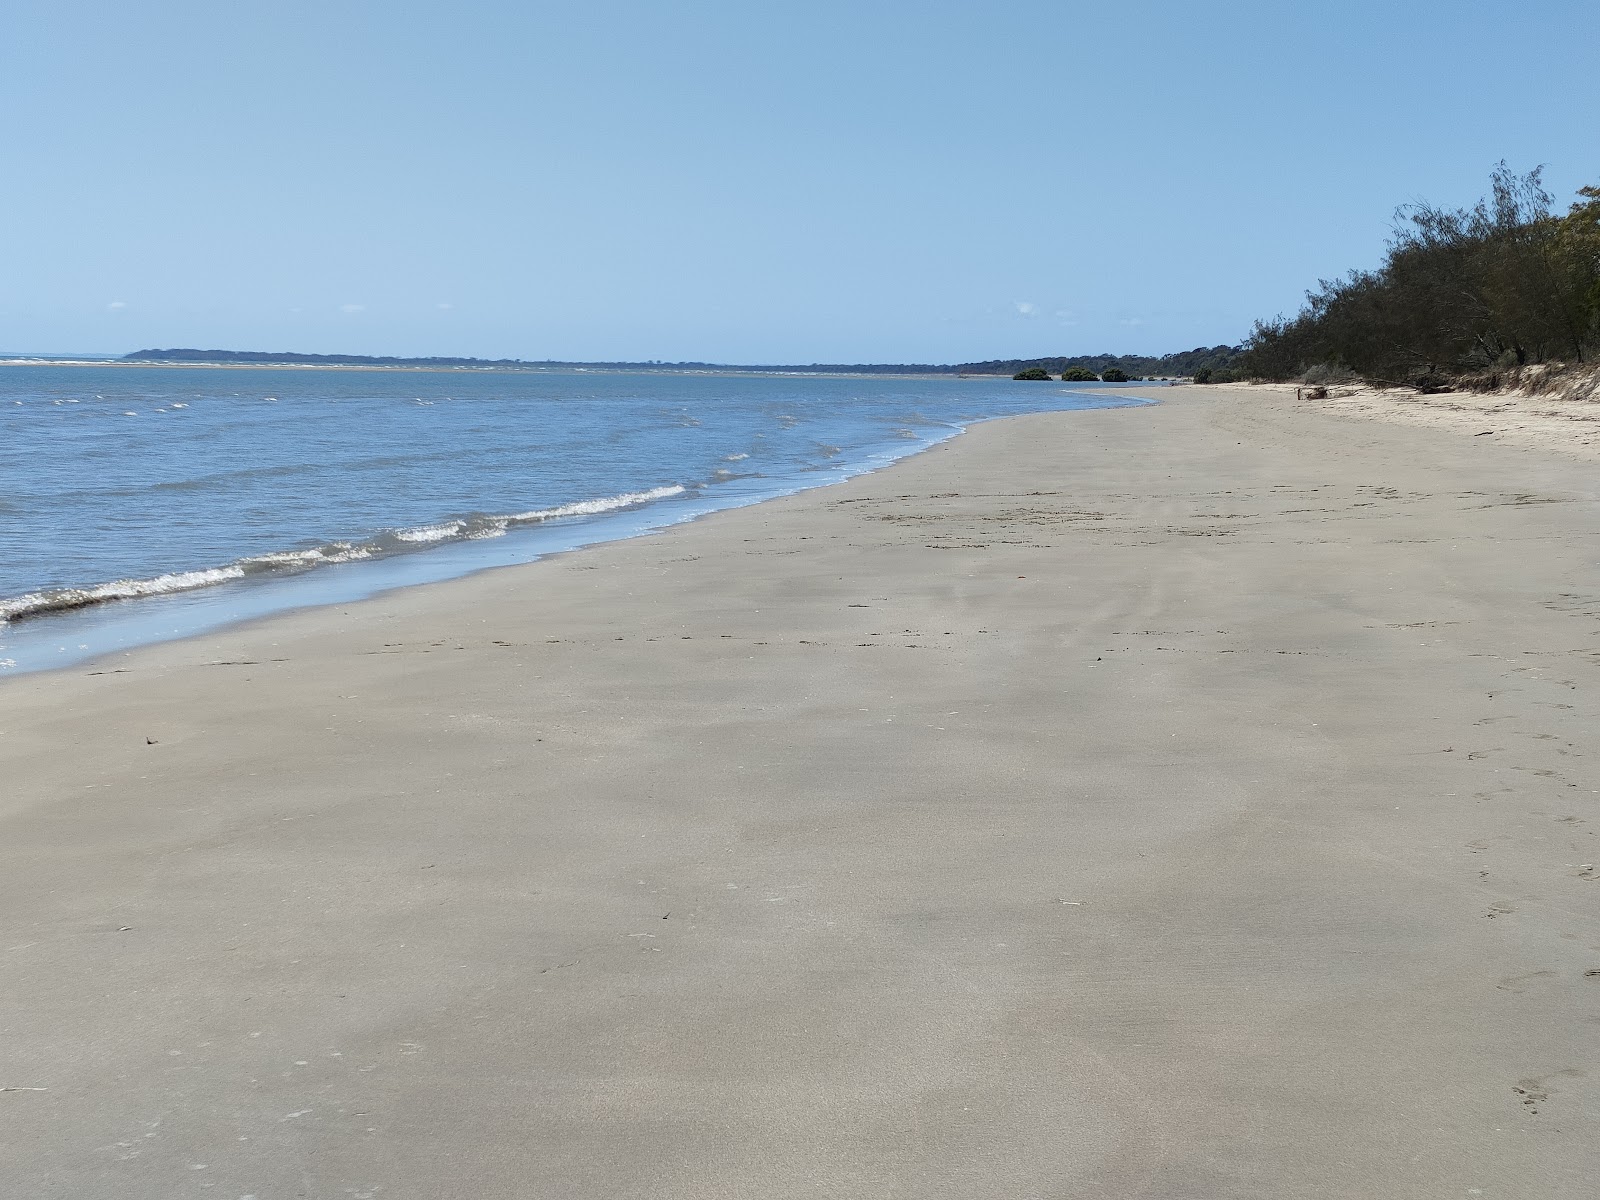 Toogoom 01 Beach'in fotoğrafı geniş plaj ile birlikte